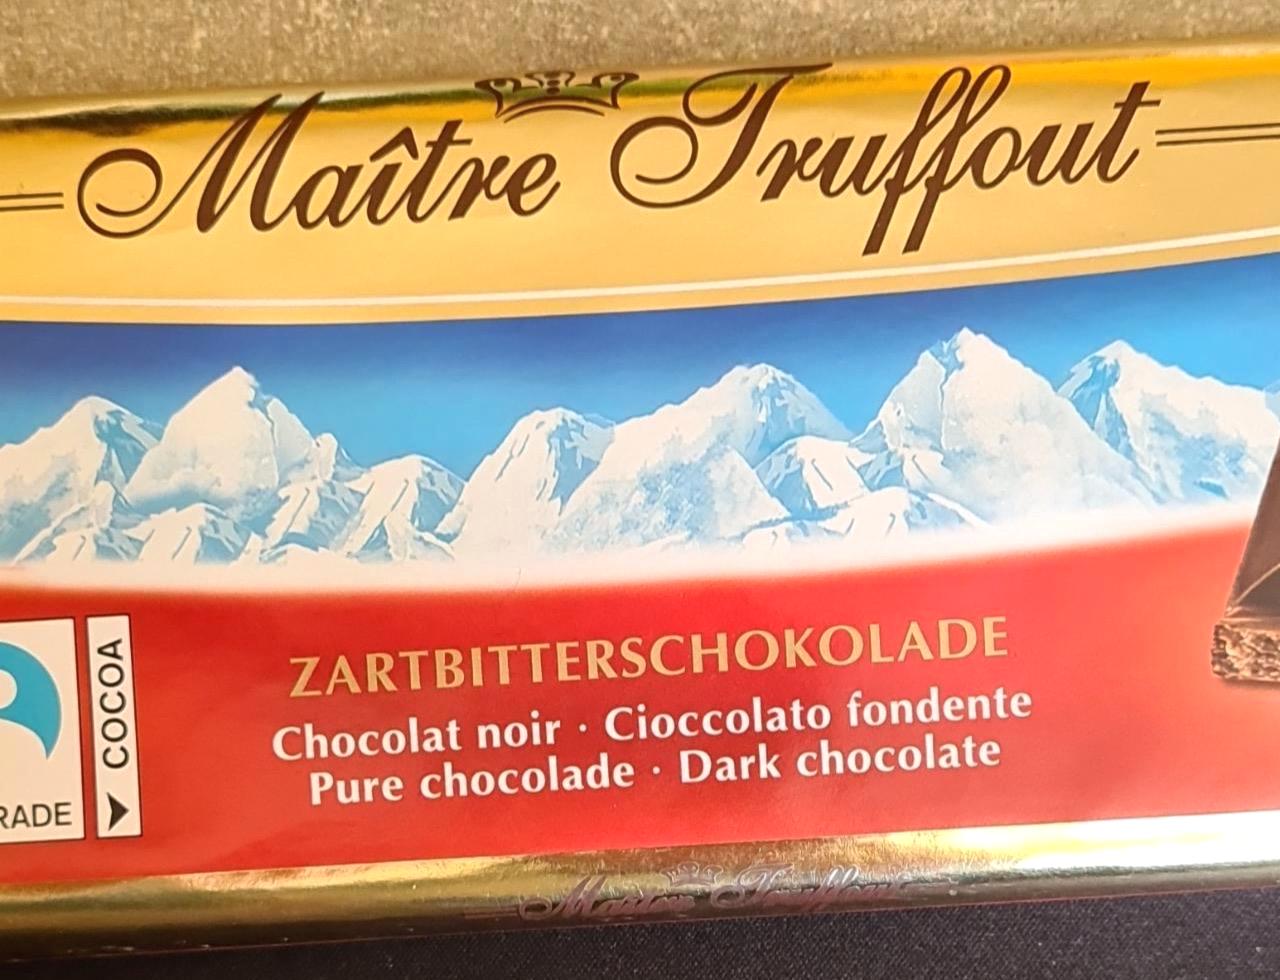 Képek - Zartbitterschokolade Maitre Truffout